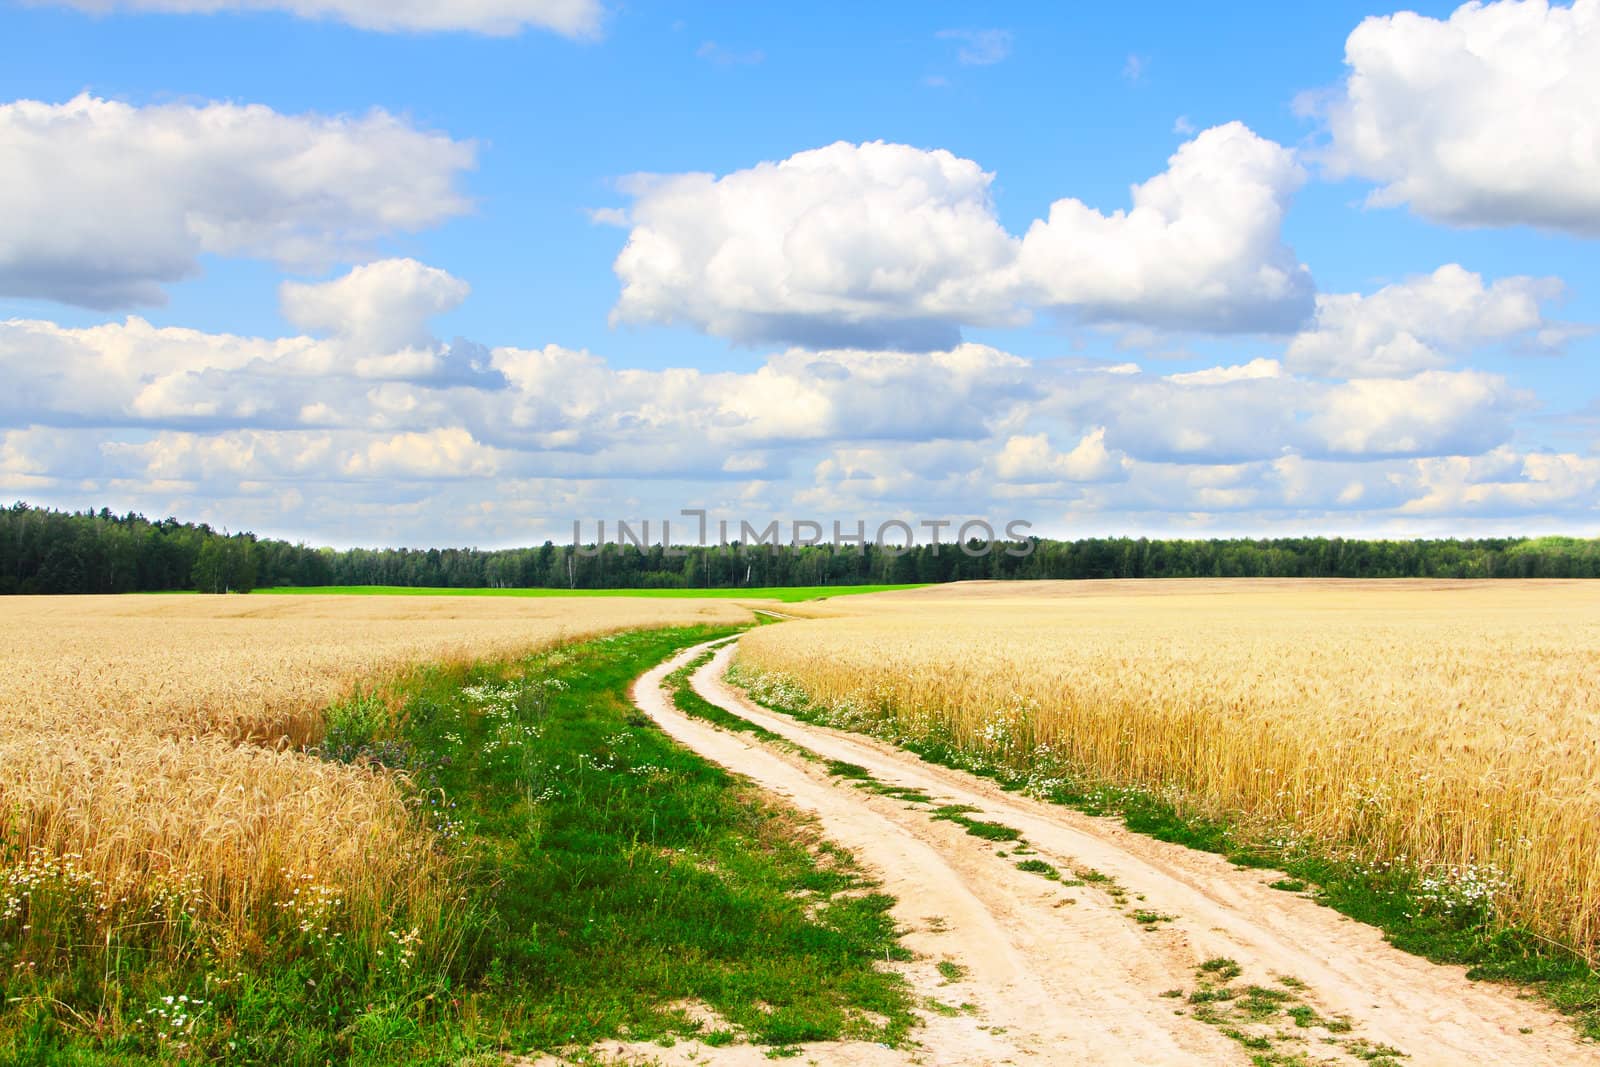 Village road in wheat field under cloudy sky